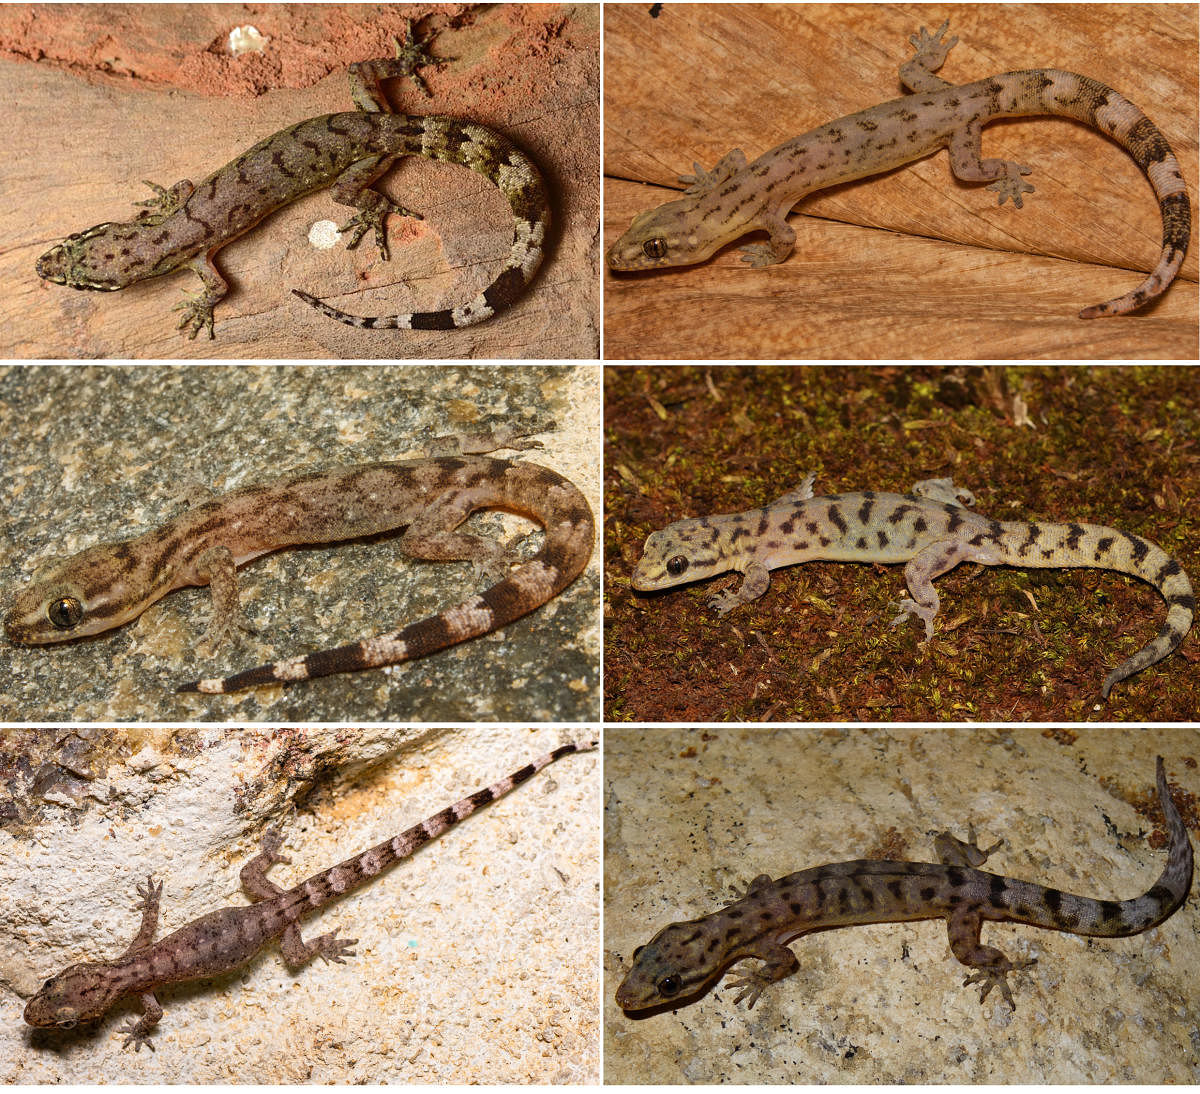 Six new species of lizards